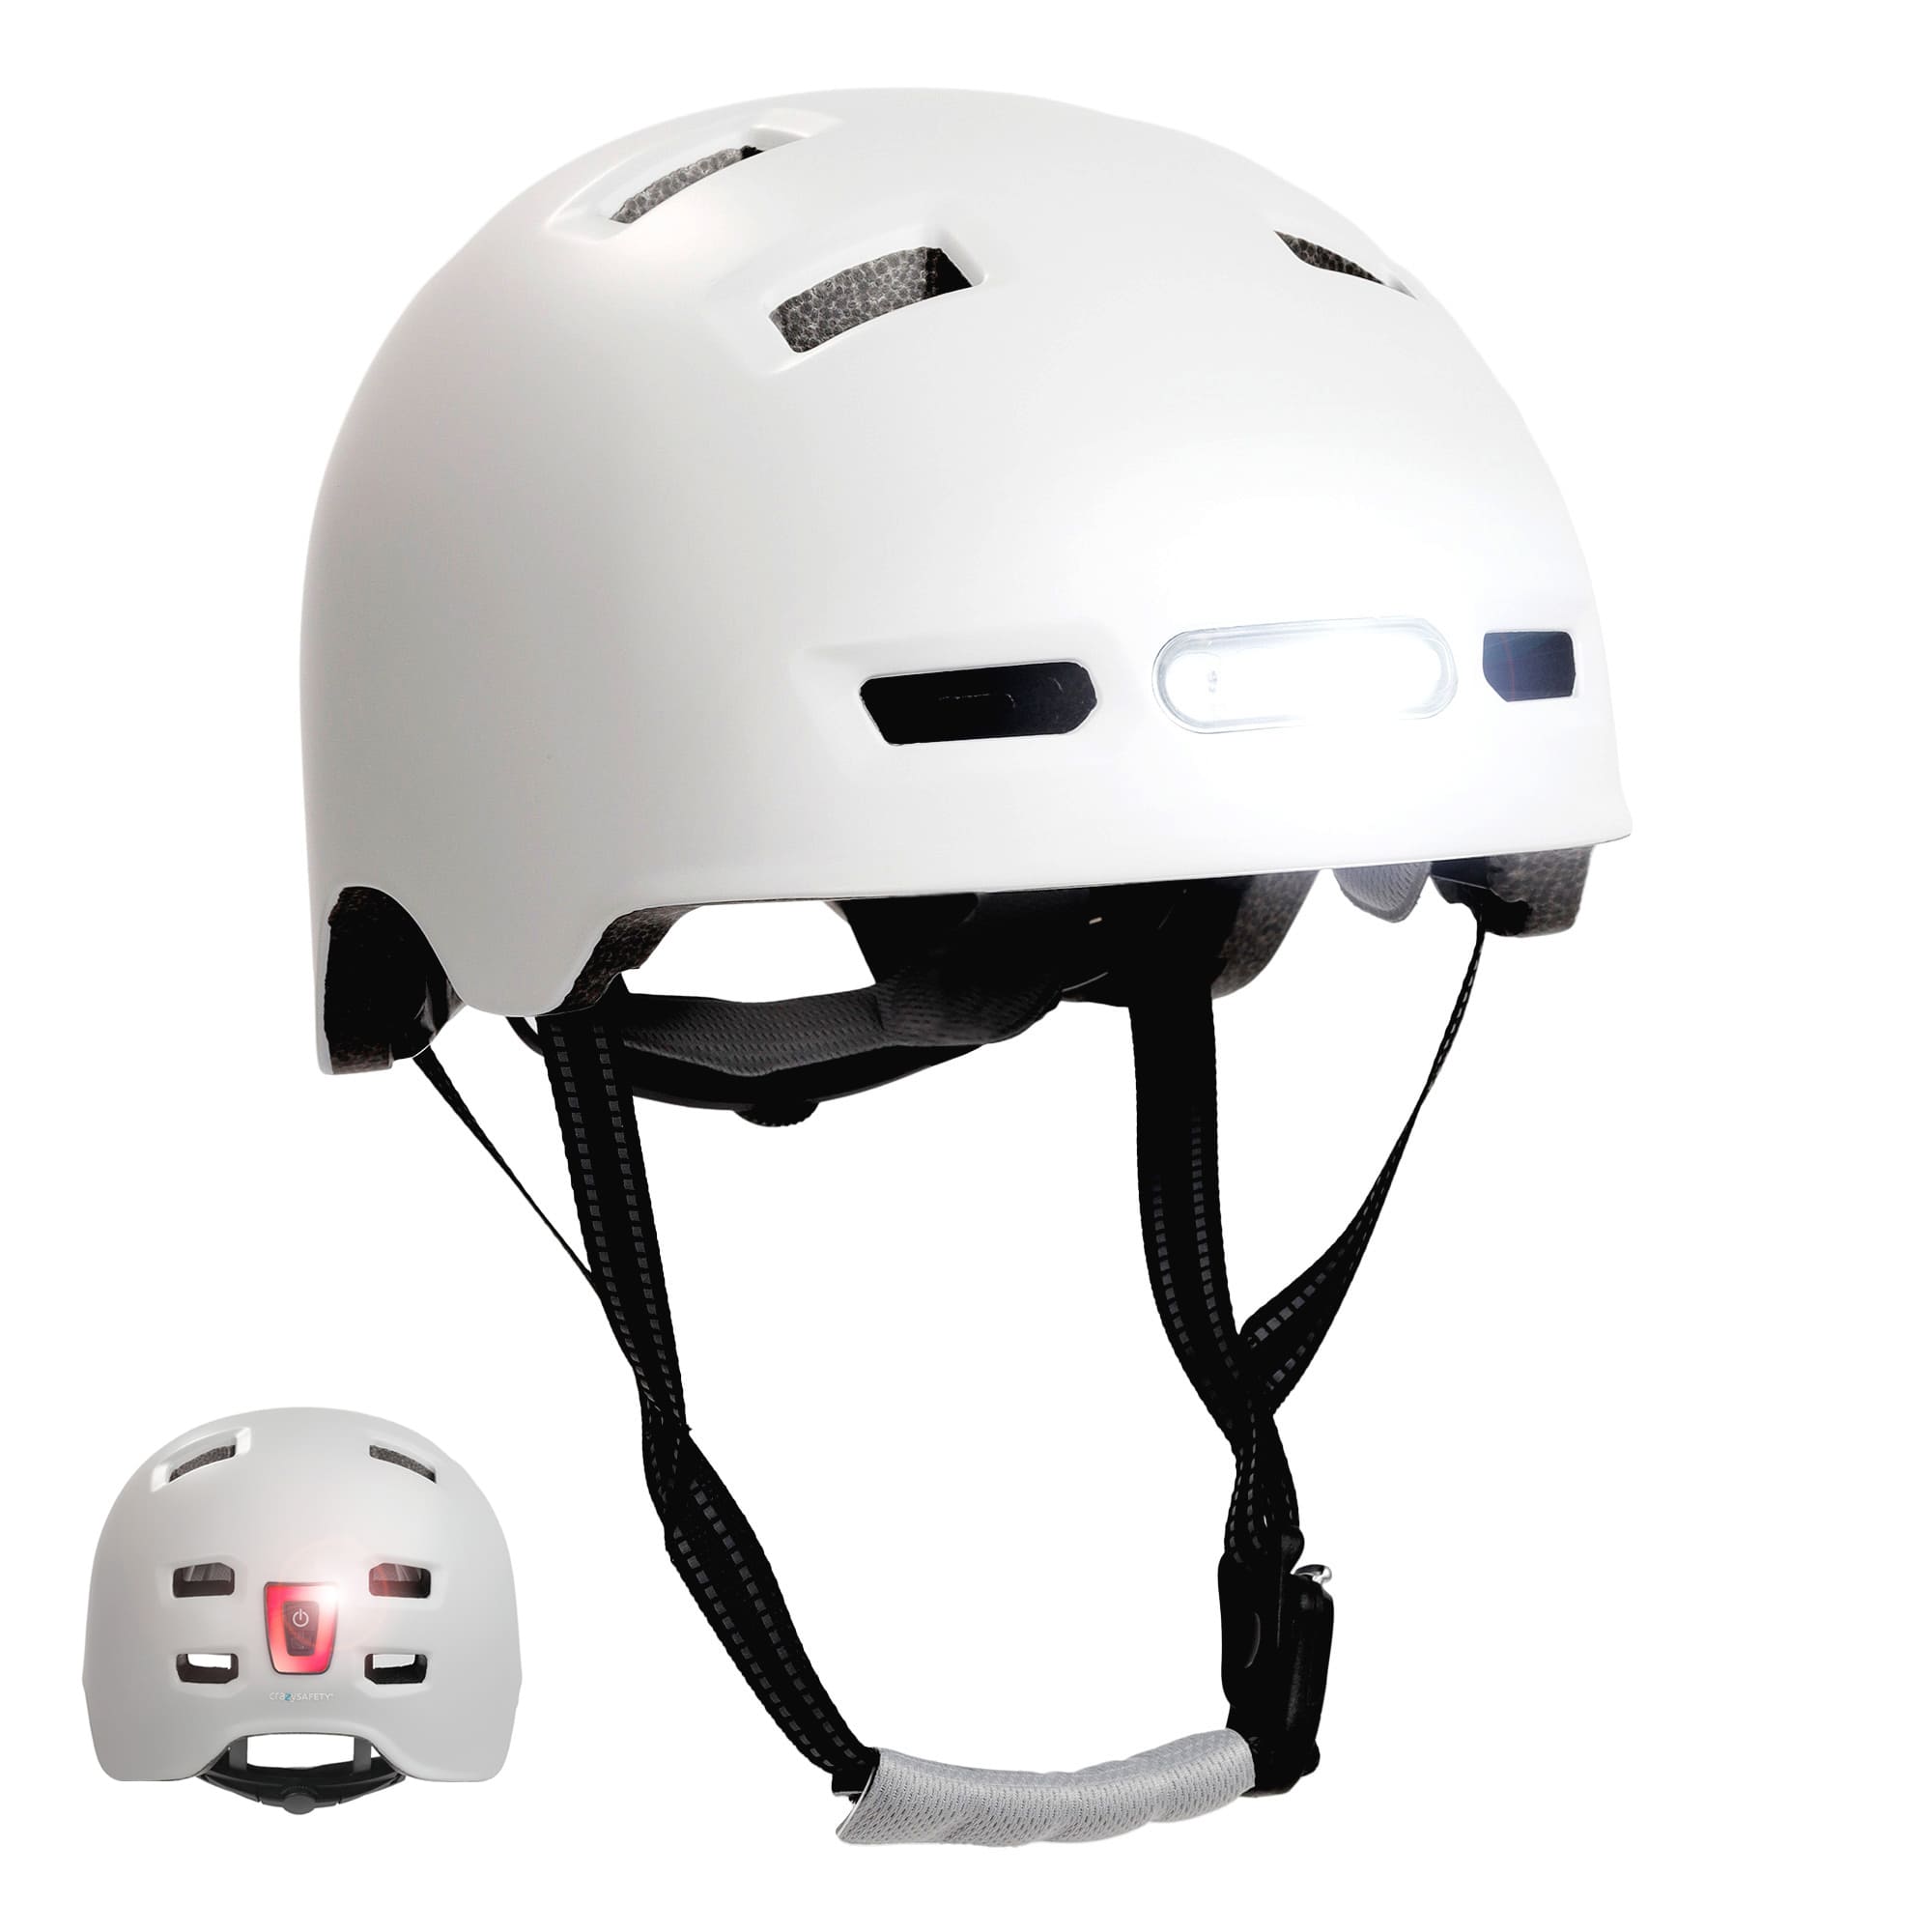 Se Mat hvid urban cykel- og skaterhjelm, størrelse L 57-61cm, til teenagere og voksne, Crazy Safety-hjelm med kraftig for- og baglygter. Godkendt og EN1078-certificeret. hos Crazy Safety